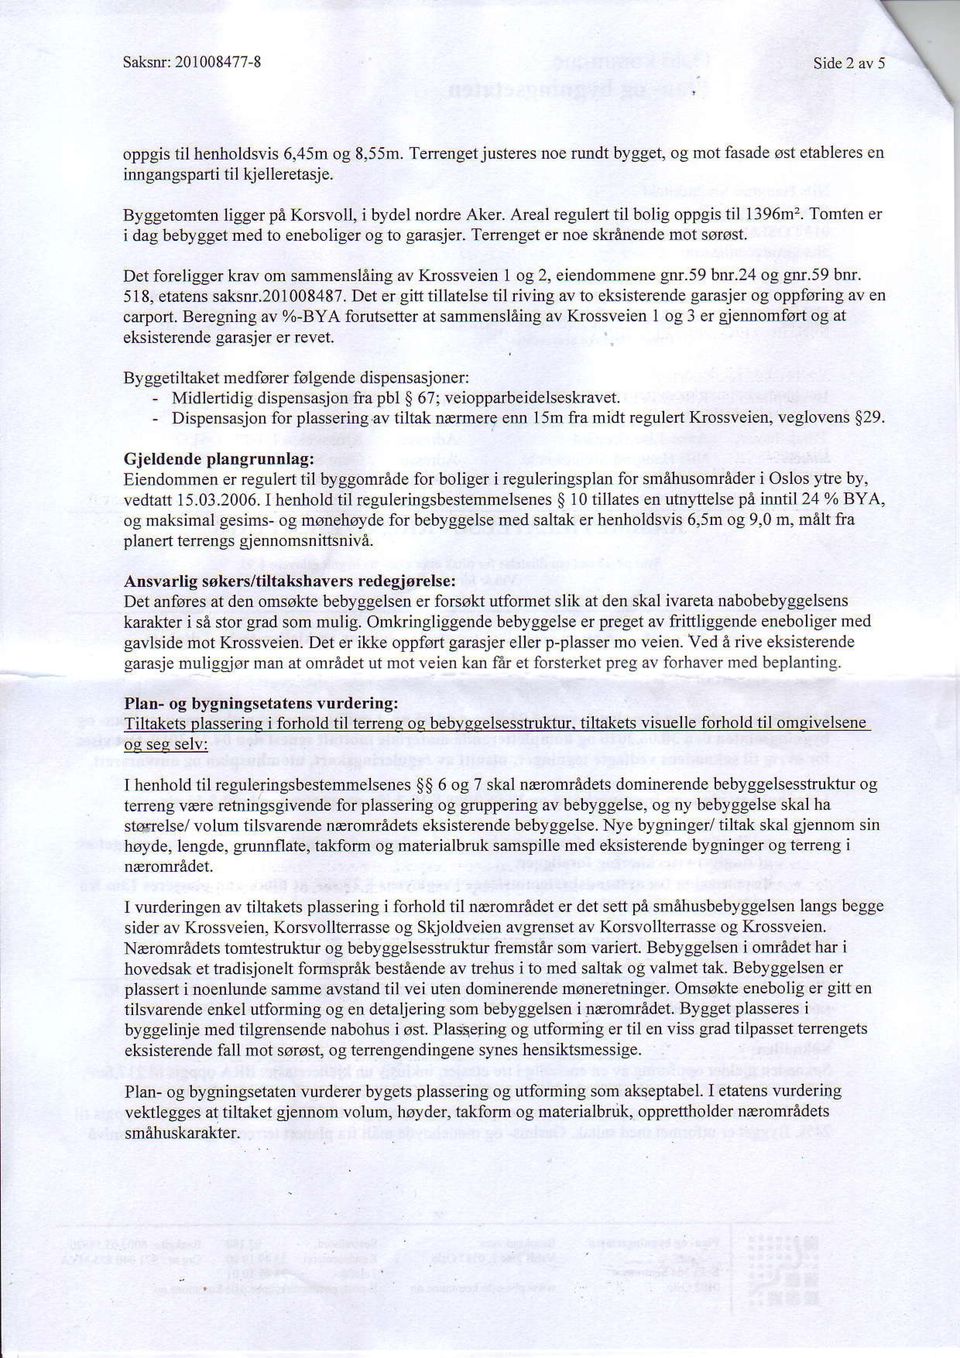 Det foreligger krav om sarnmersl5ing av Krossveien 1 og 2, eiendommene gnr.59 bnr.24 og gnr.59 bnr. 518, etatensaksff.201008487.